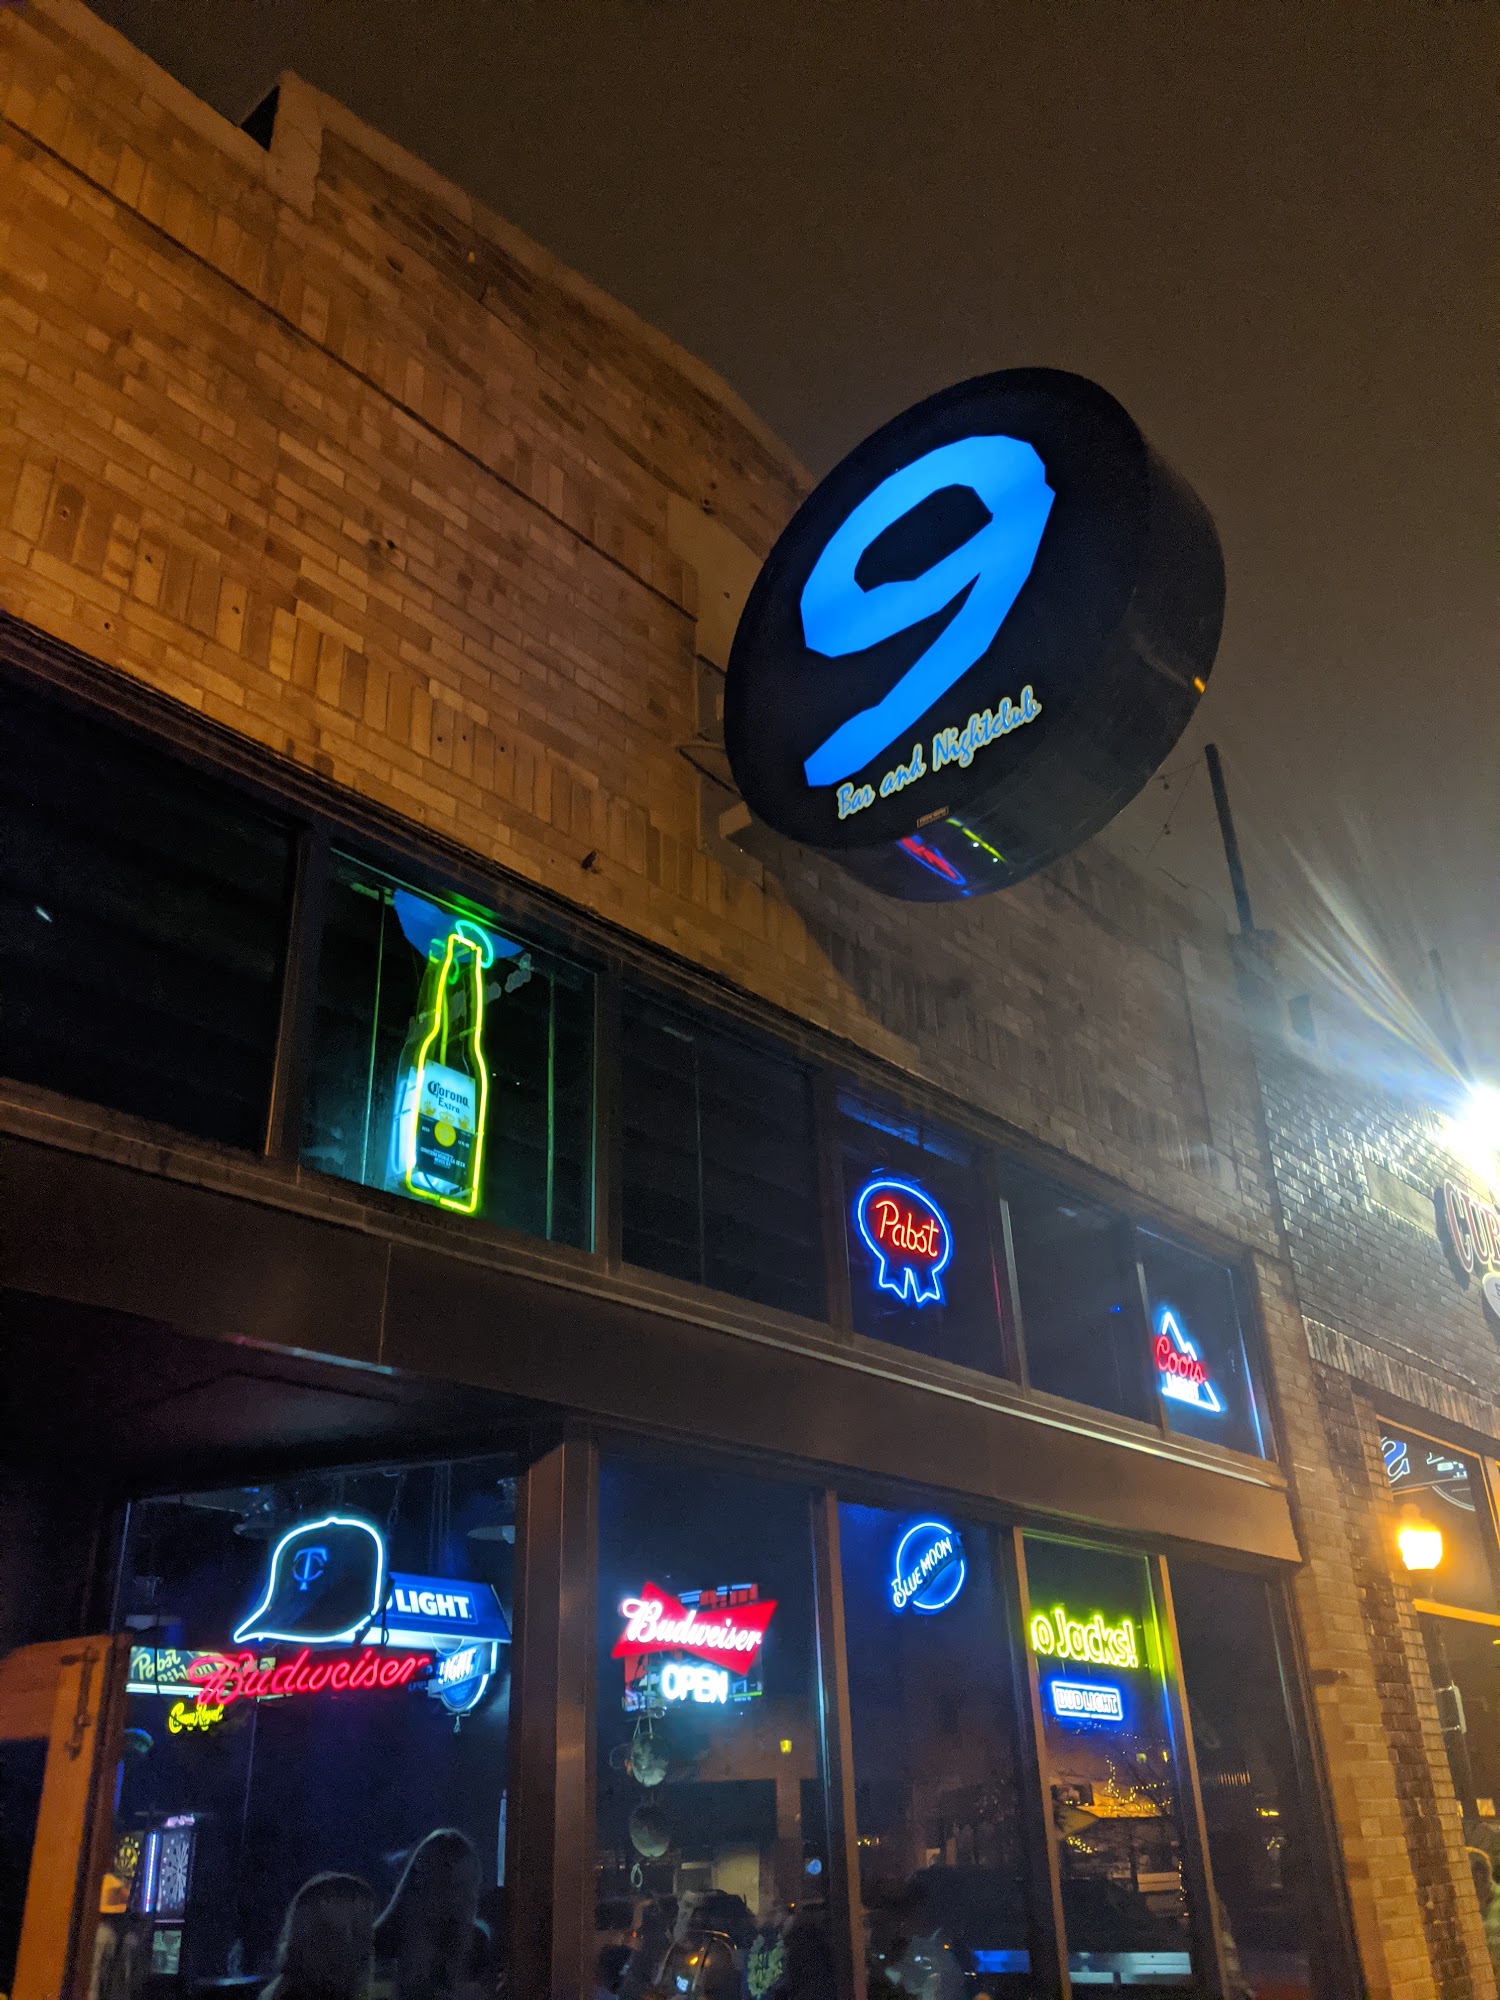 The 9 Bar & Nightclub